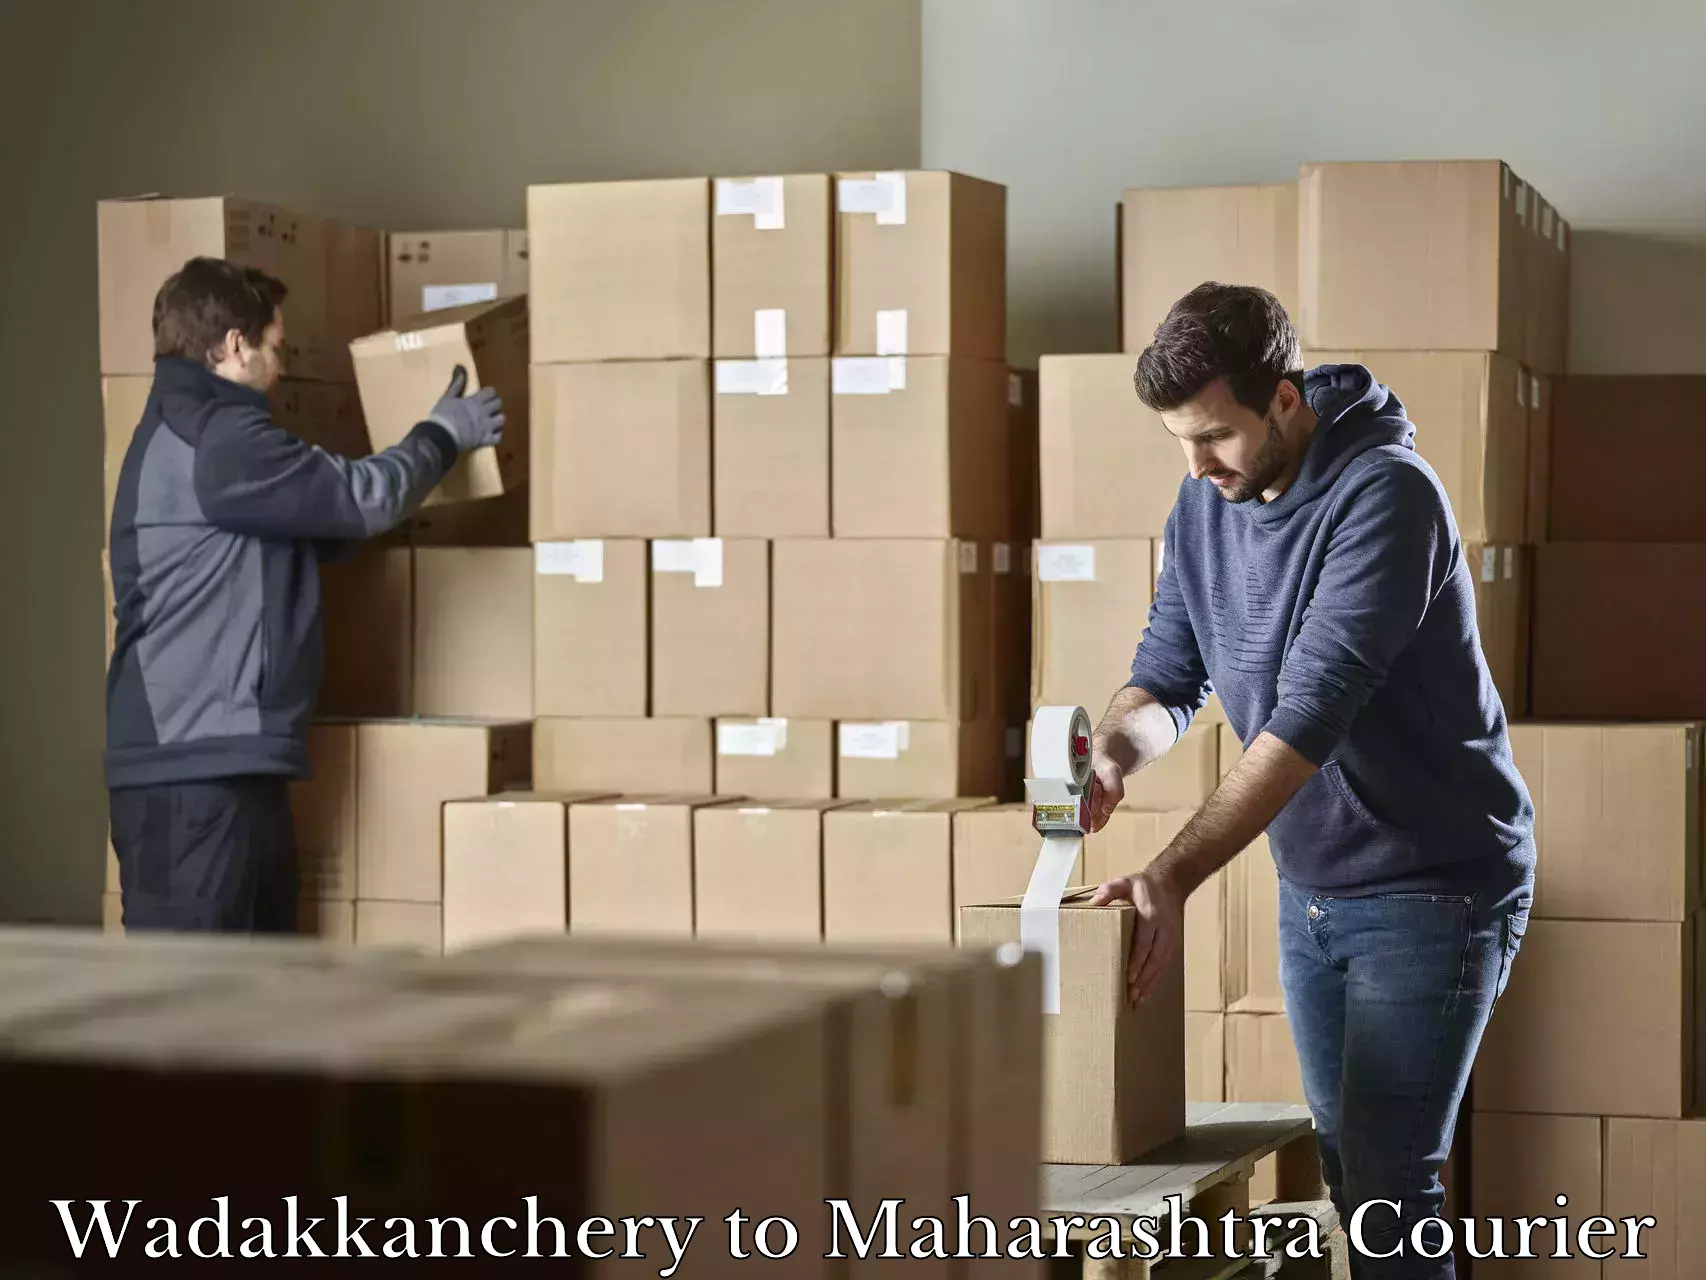 Luggage shipment specialists in Wadakkanchery to Palghar